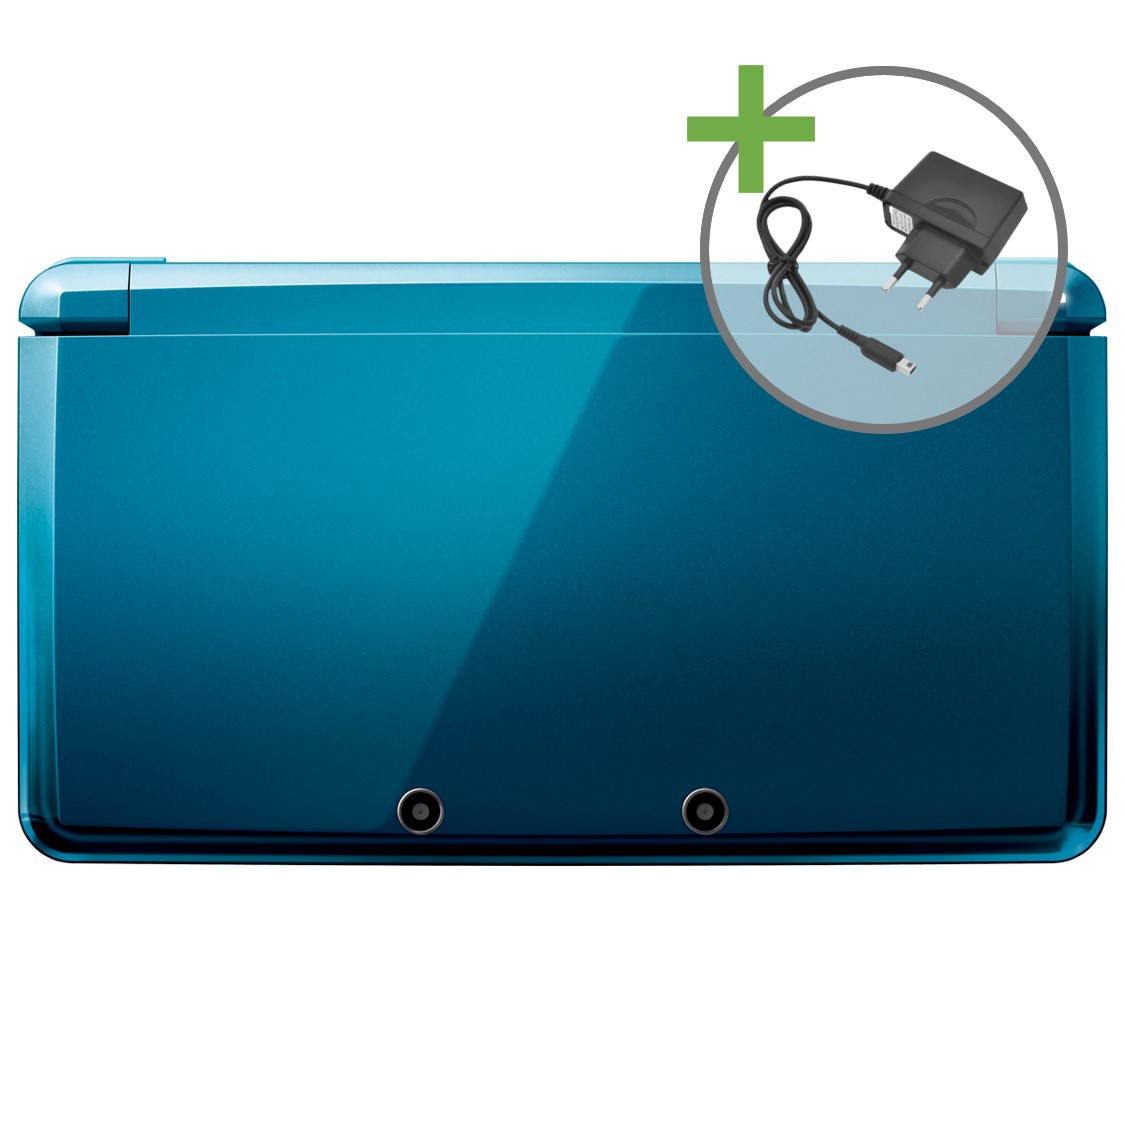 Nintendo 3DS - Aqua Blue - Nintendo 3DS Hardware - 3